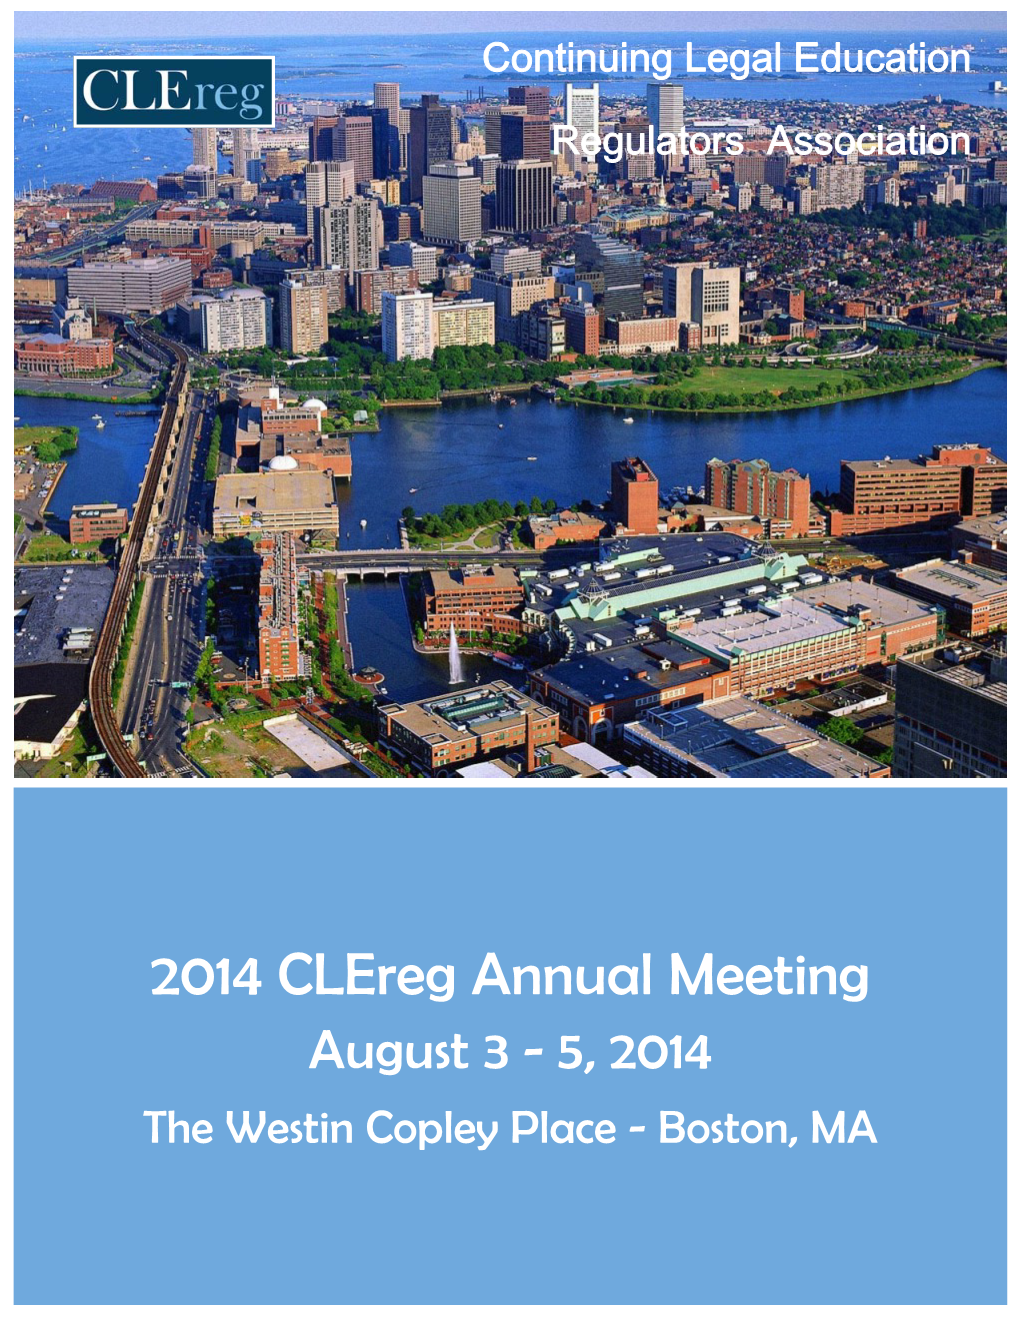 2014 Annual Meeting Brochure Boston.Pub